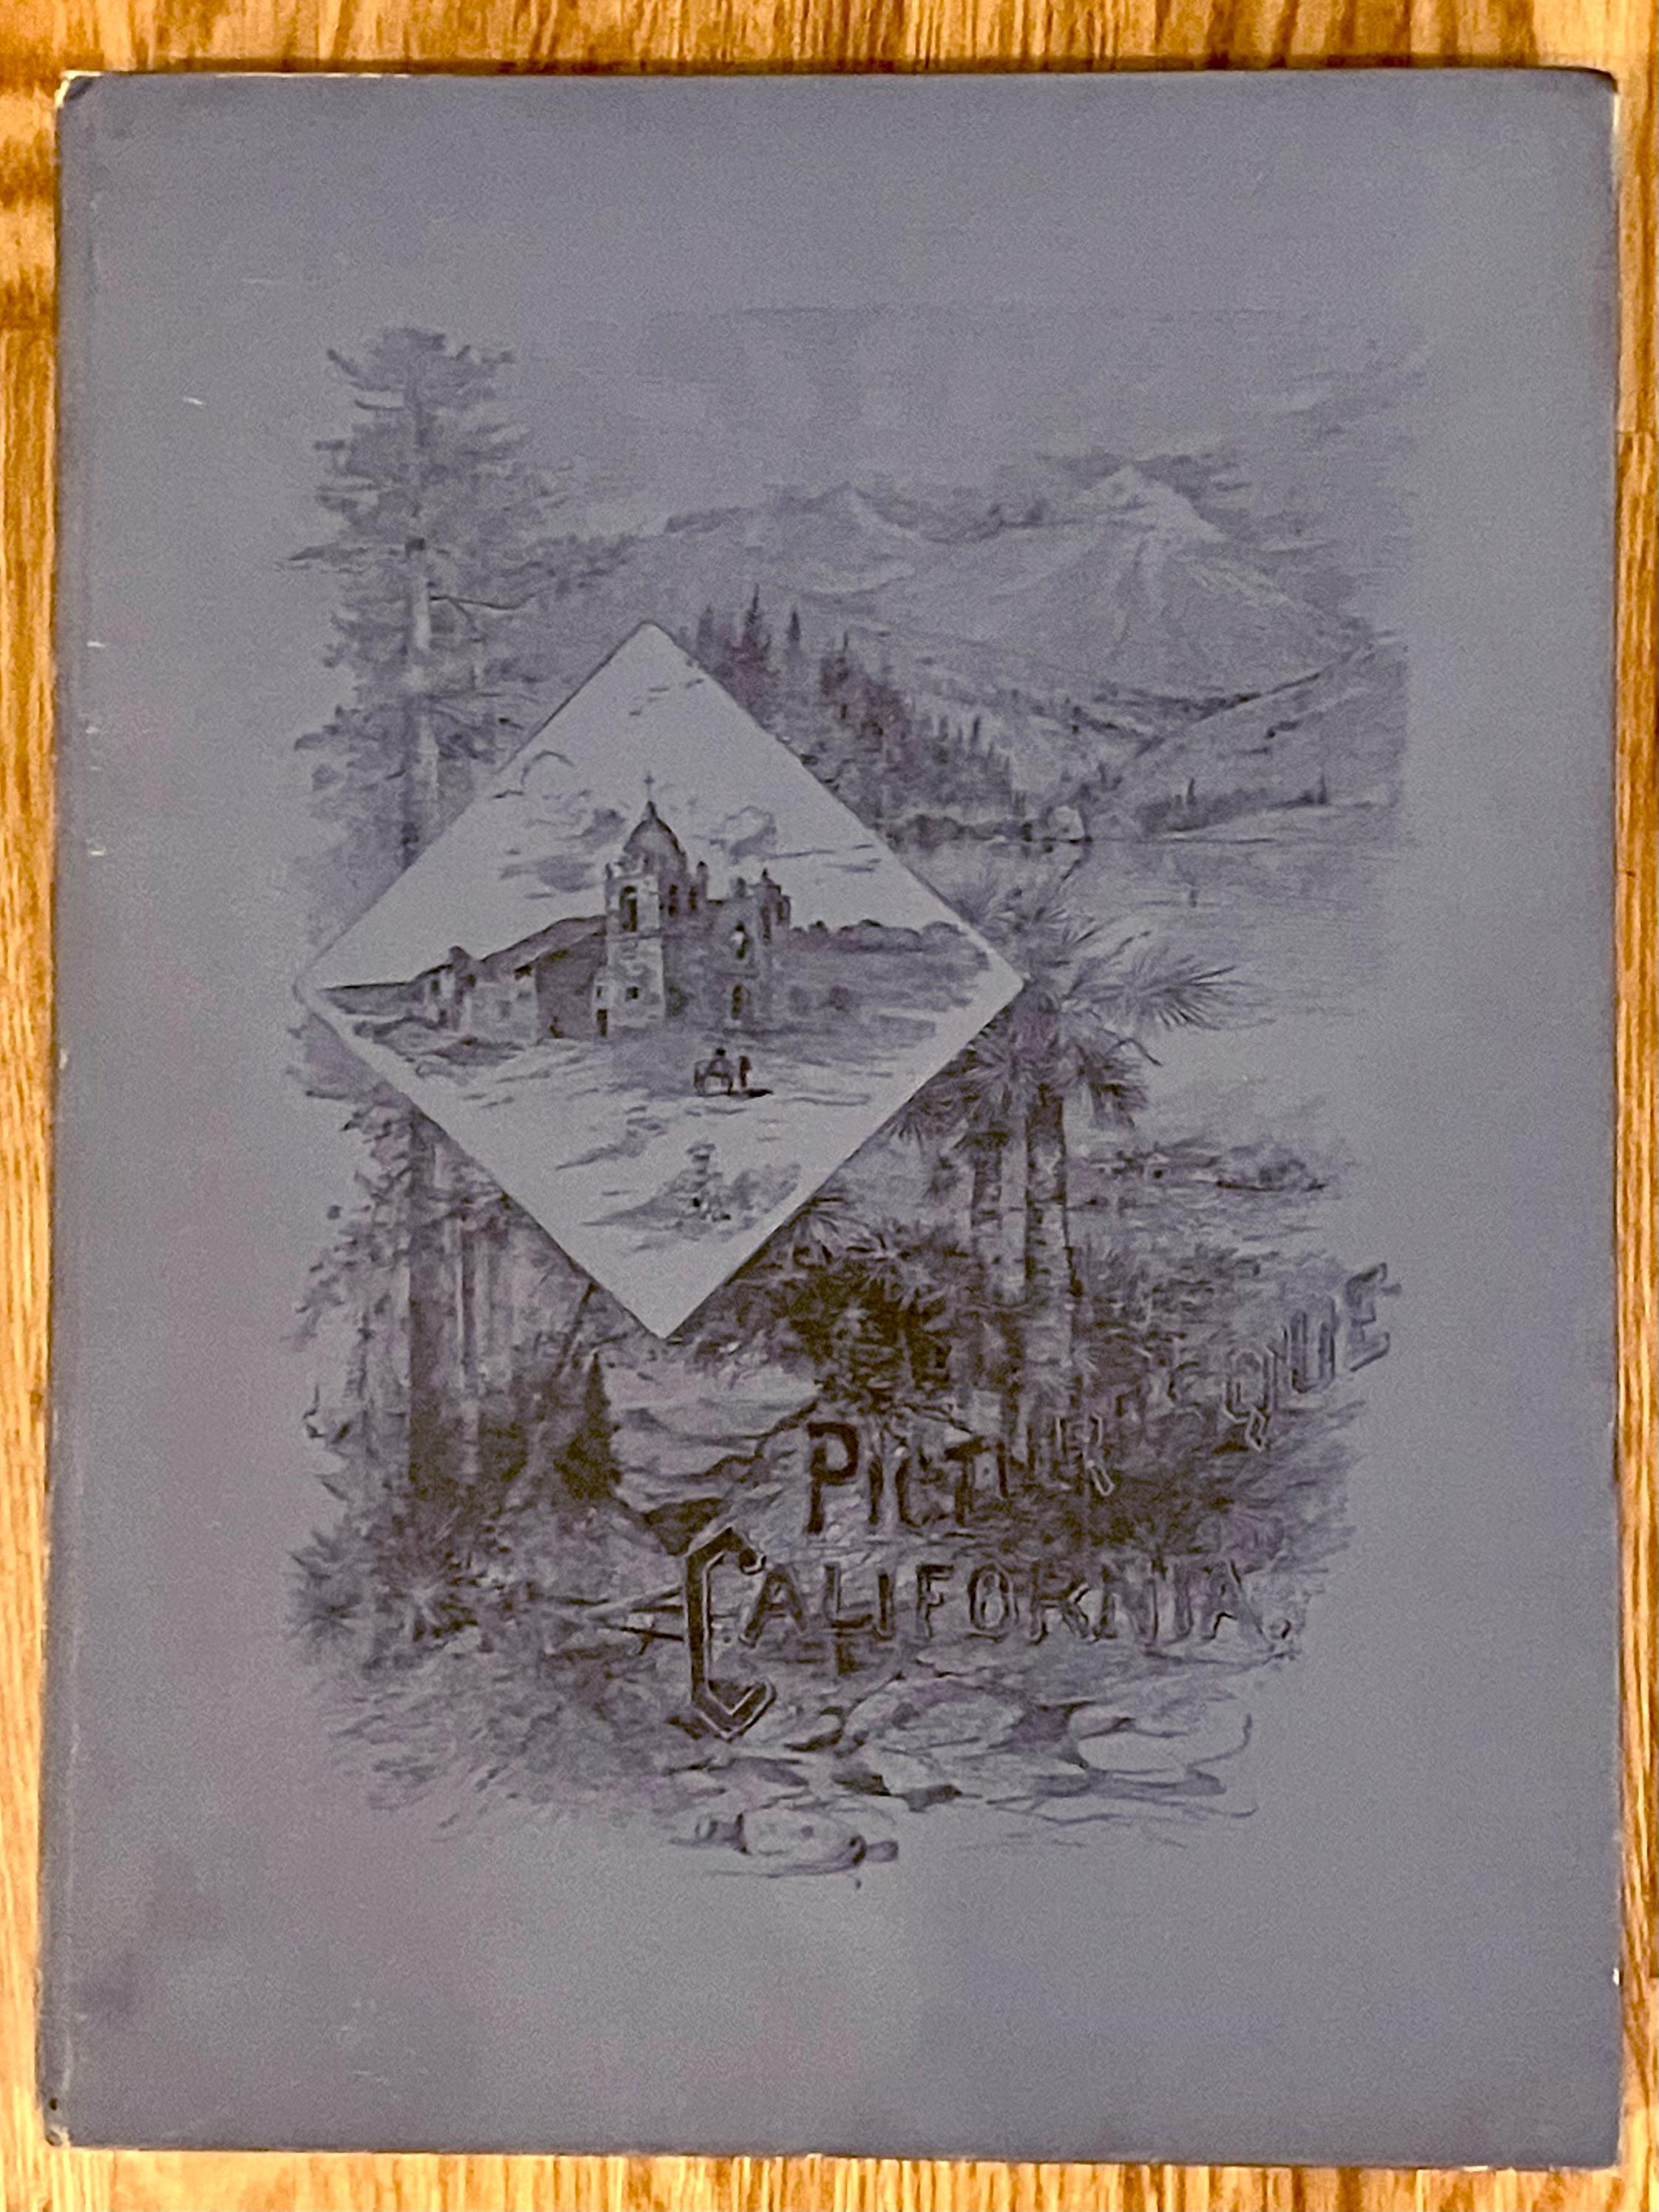 Première édition en 10 volumes folio de Picturesque California and the Region West of the Rocky Mountains édité par John Muir, le célèbre auteur et naturaliste américain, imprimé en 1888 par la maison d'édition J.Dewing. Cet ensemble comprend plus